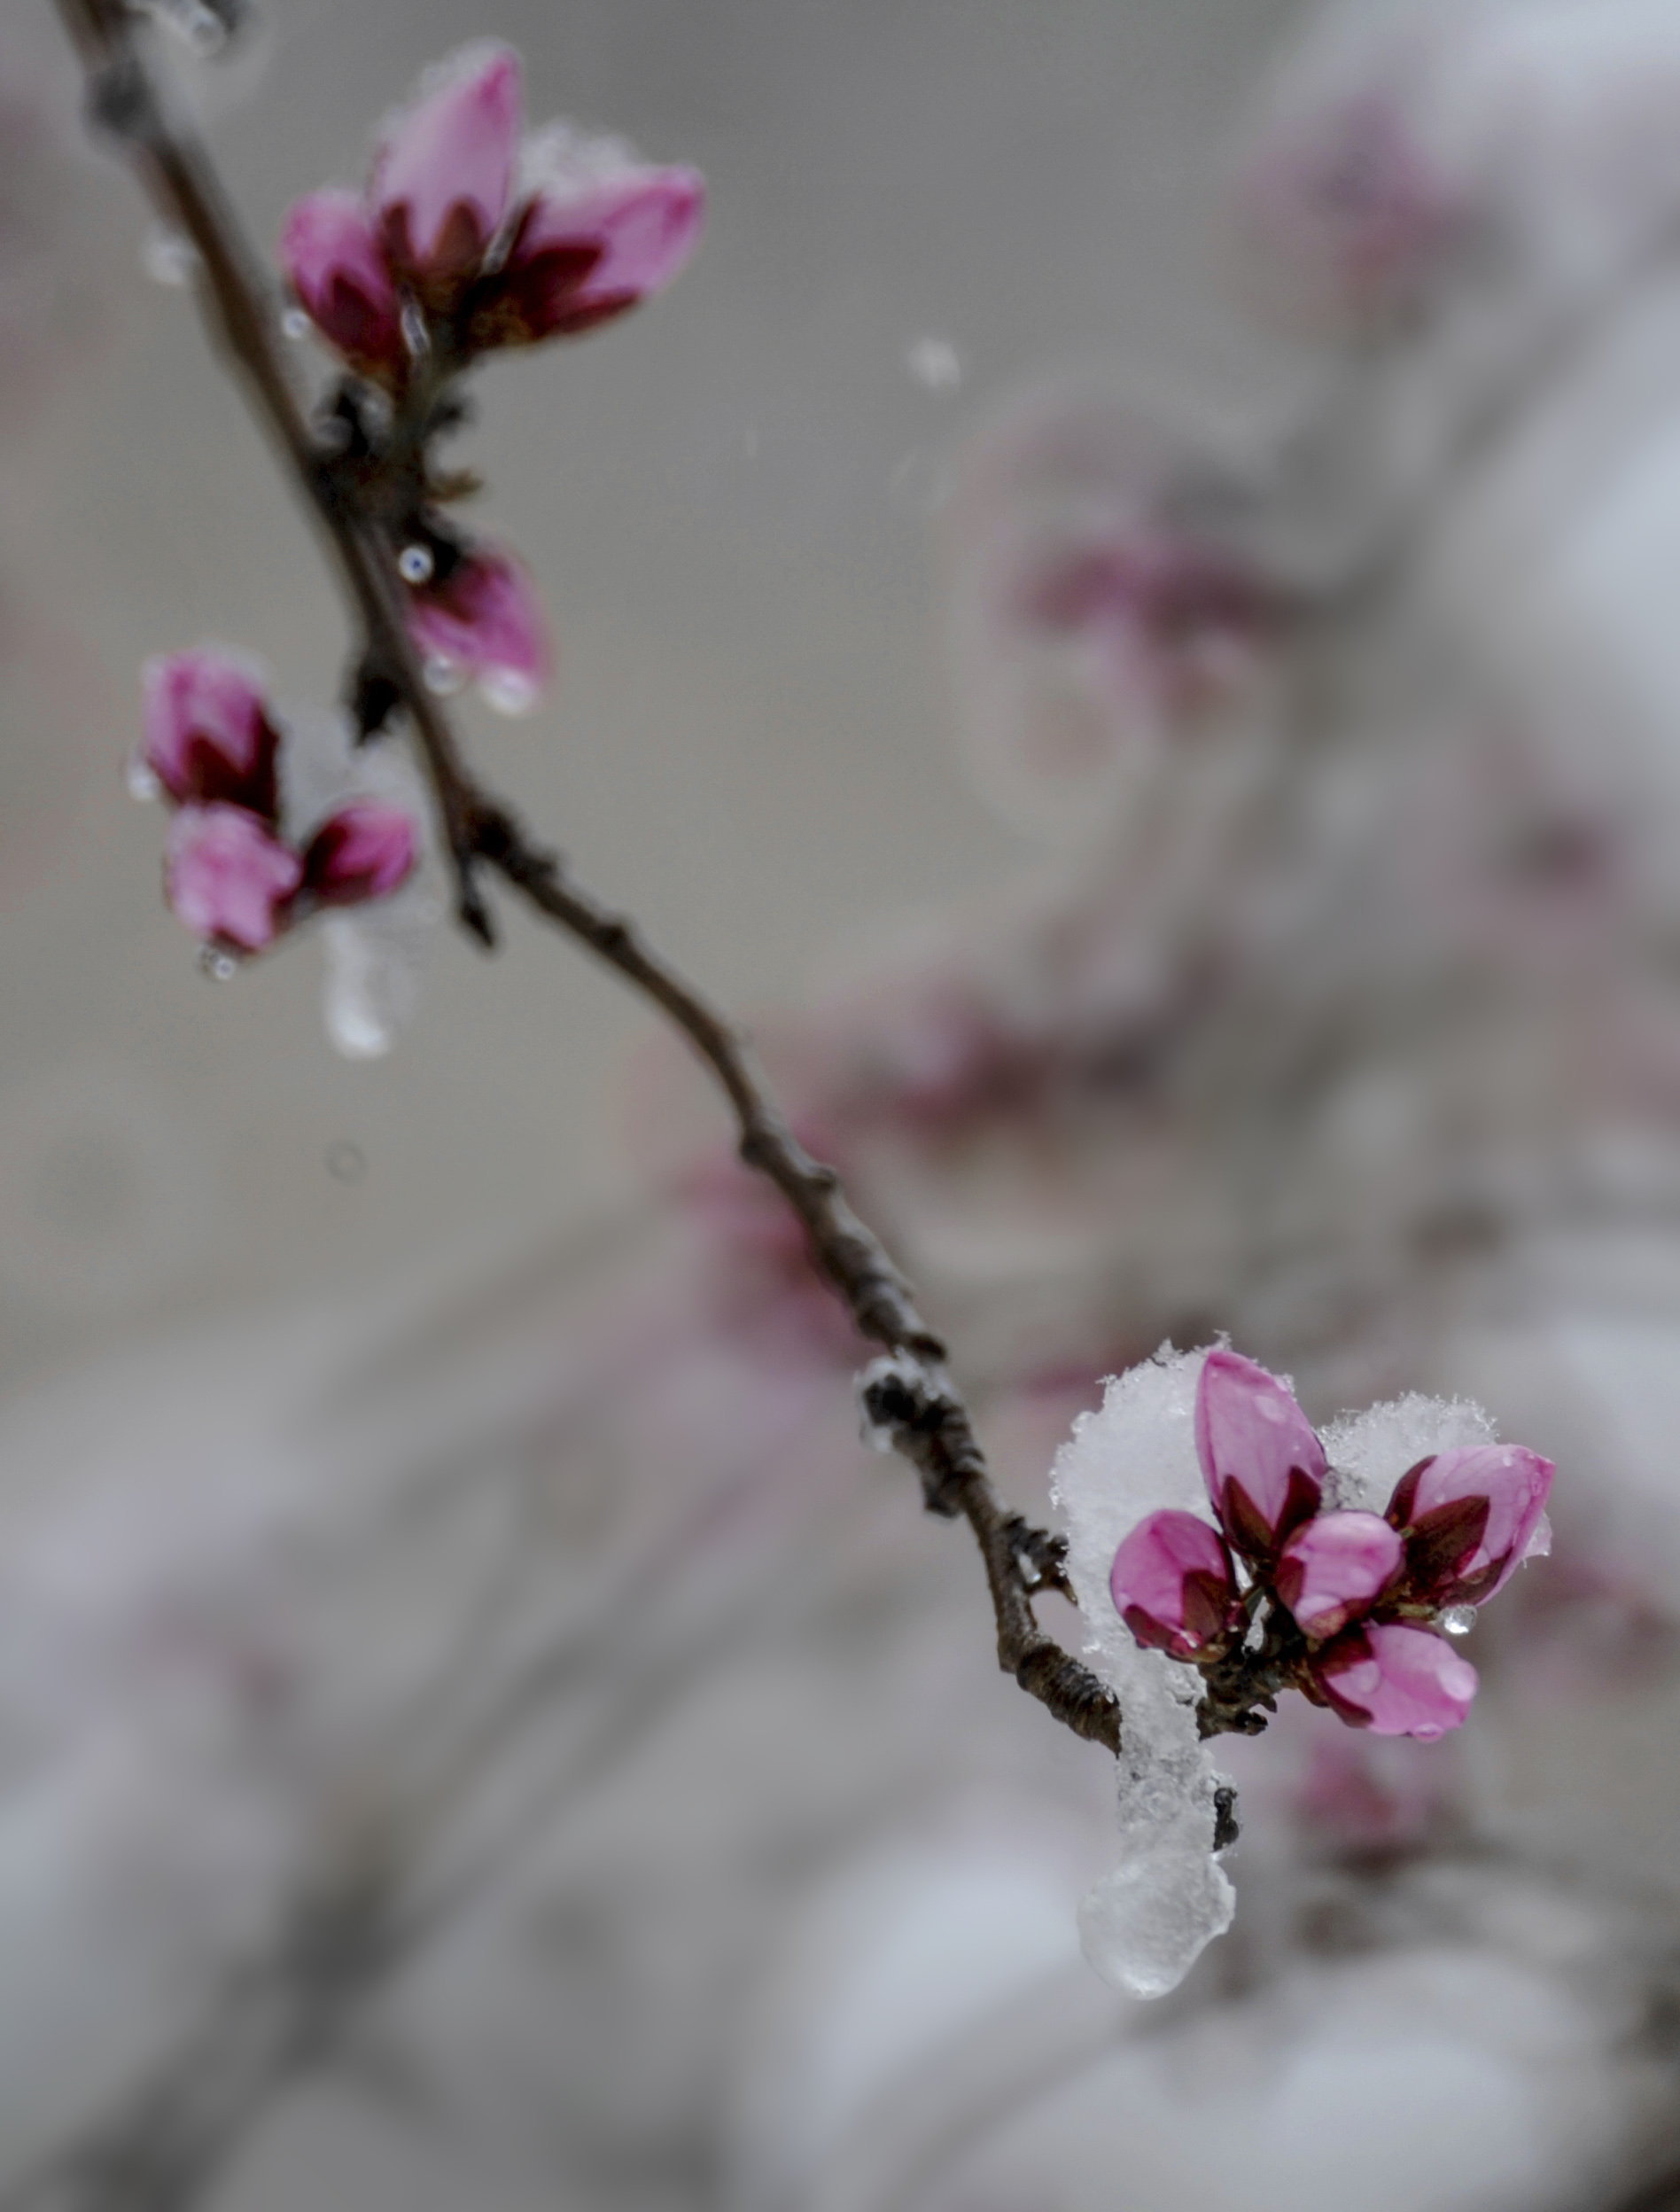 雪映桃花-菏泽牡丹商品品种-图片